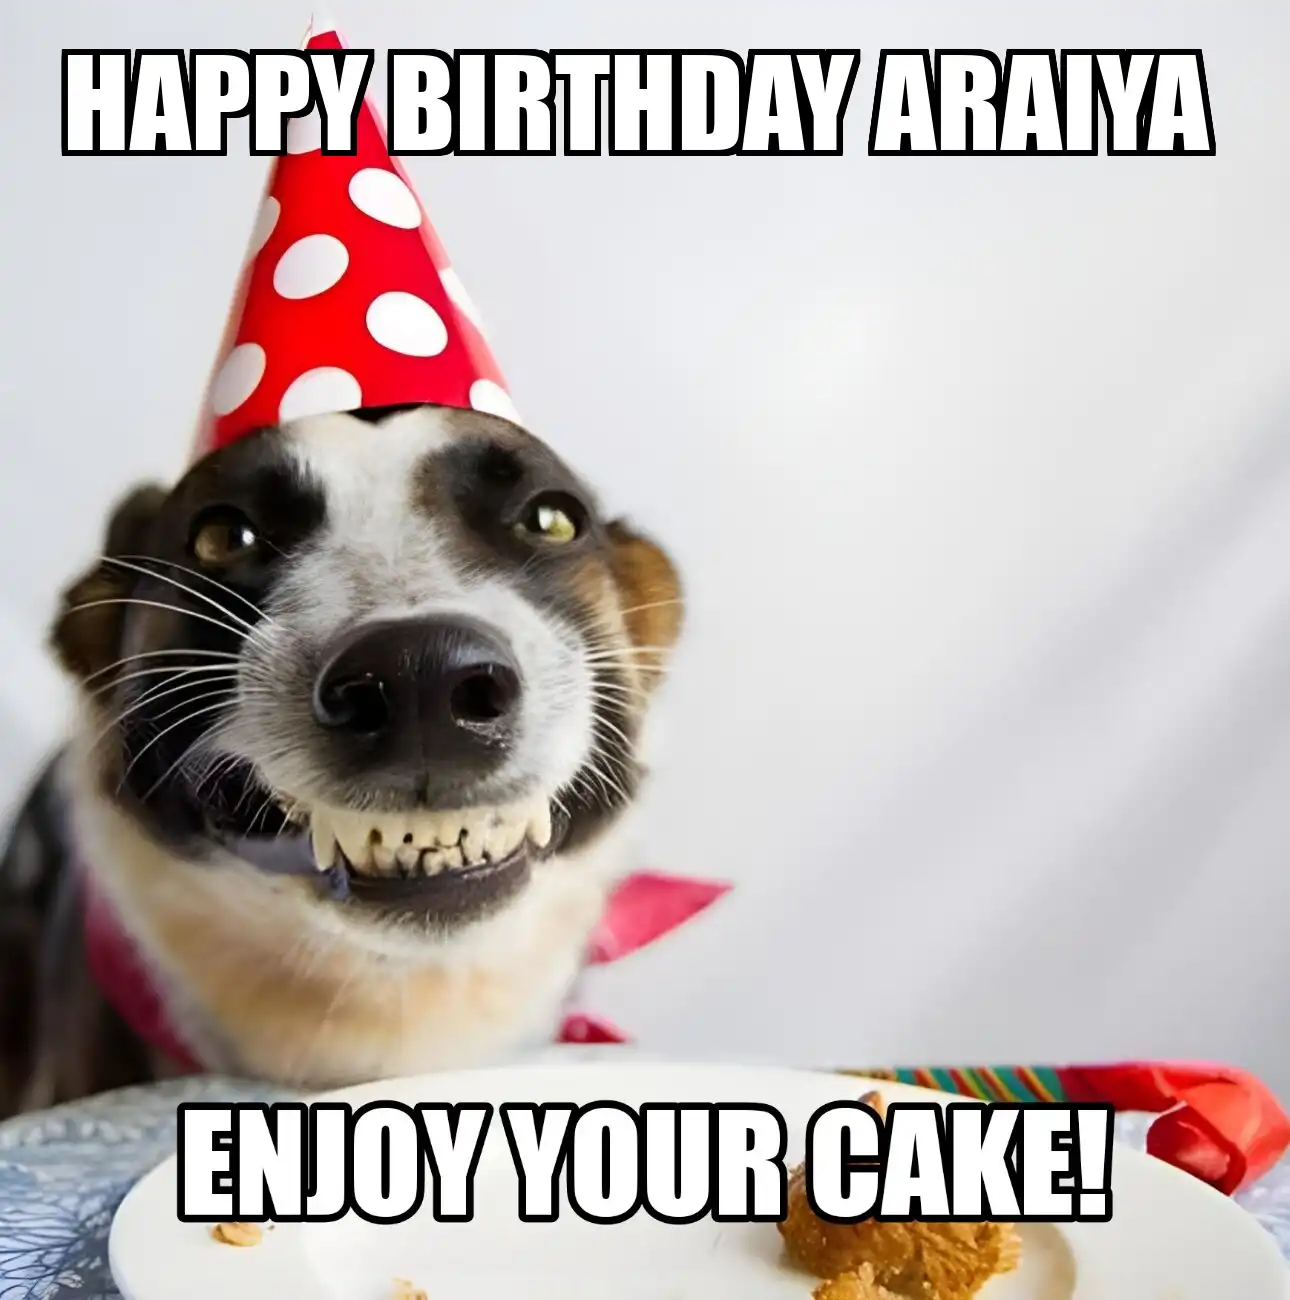 Happy Birthday Araiya Enjoy Your Cake Dog Meme